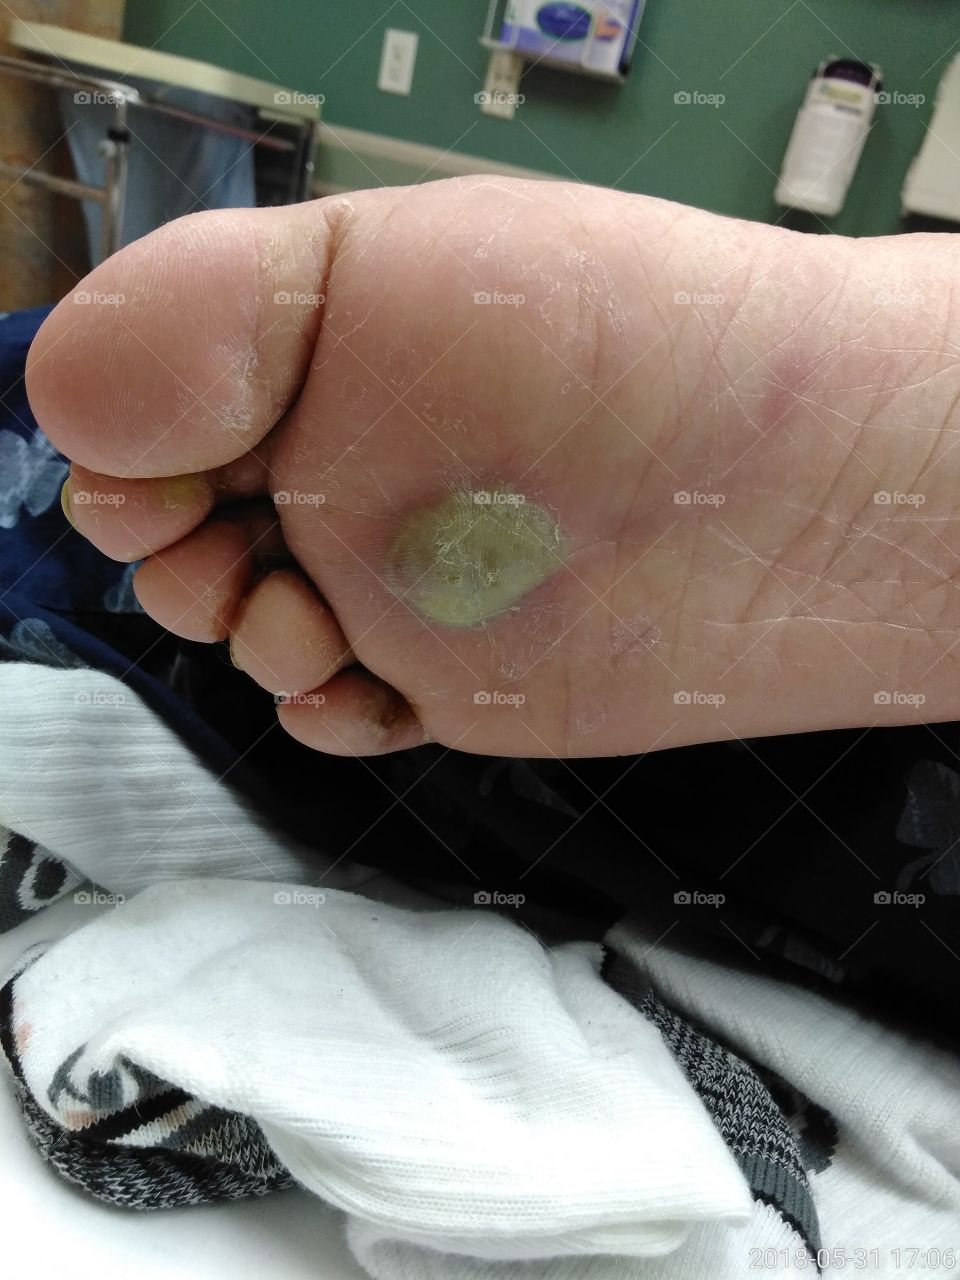 severe blister on foot